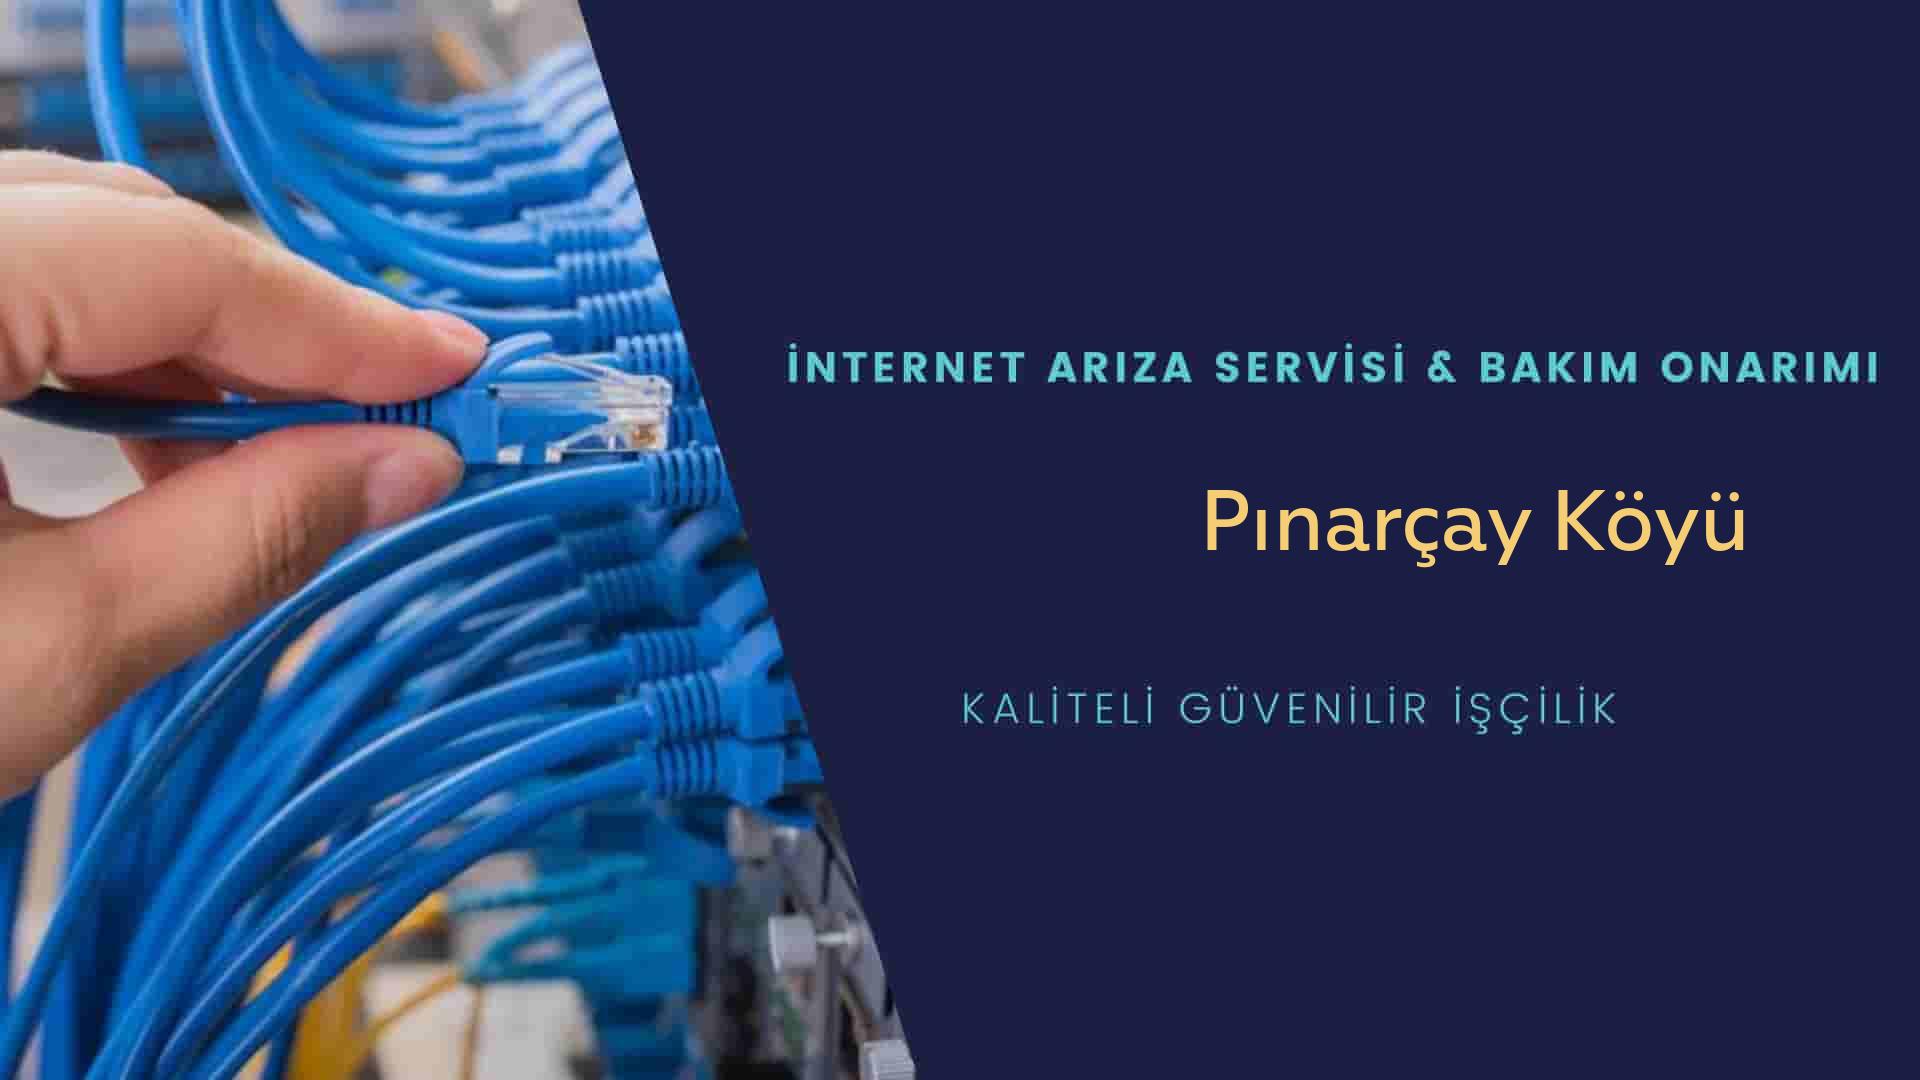 Pınarçay Köyü internet kablosu çekimi yapan yerler veya elektrikçiler mi? arıyorsunuz doğru yerdesiniz o zaman sizlere 7/24 yardımcı olacak profesyonel ustalarımız bir telefon kadar yakındır size.